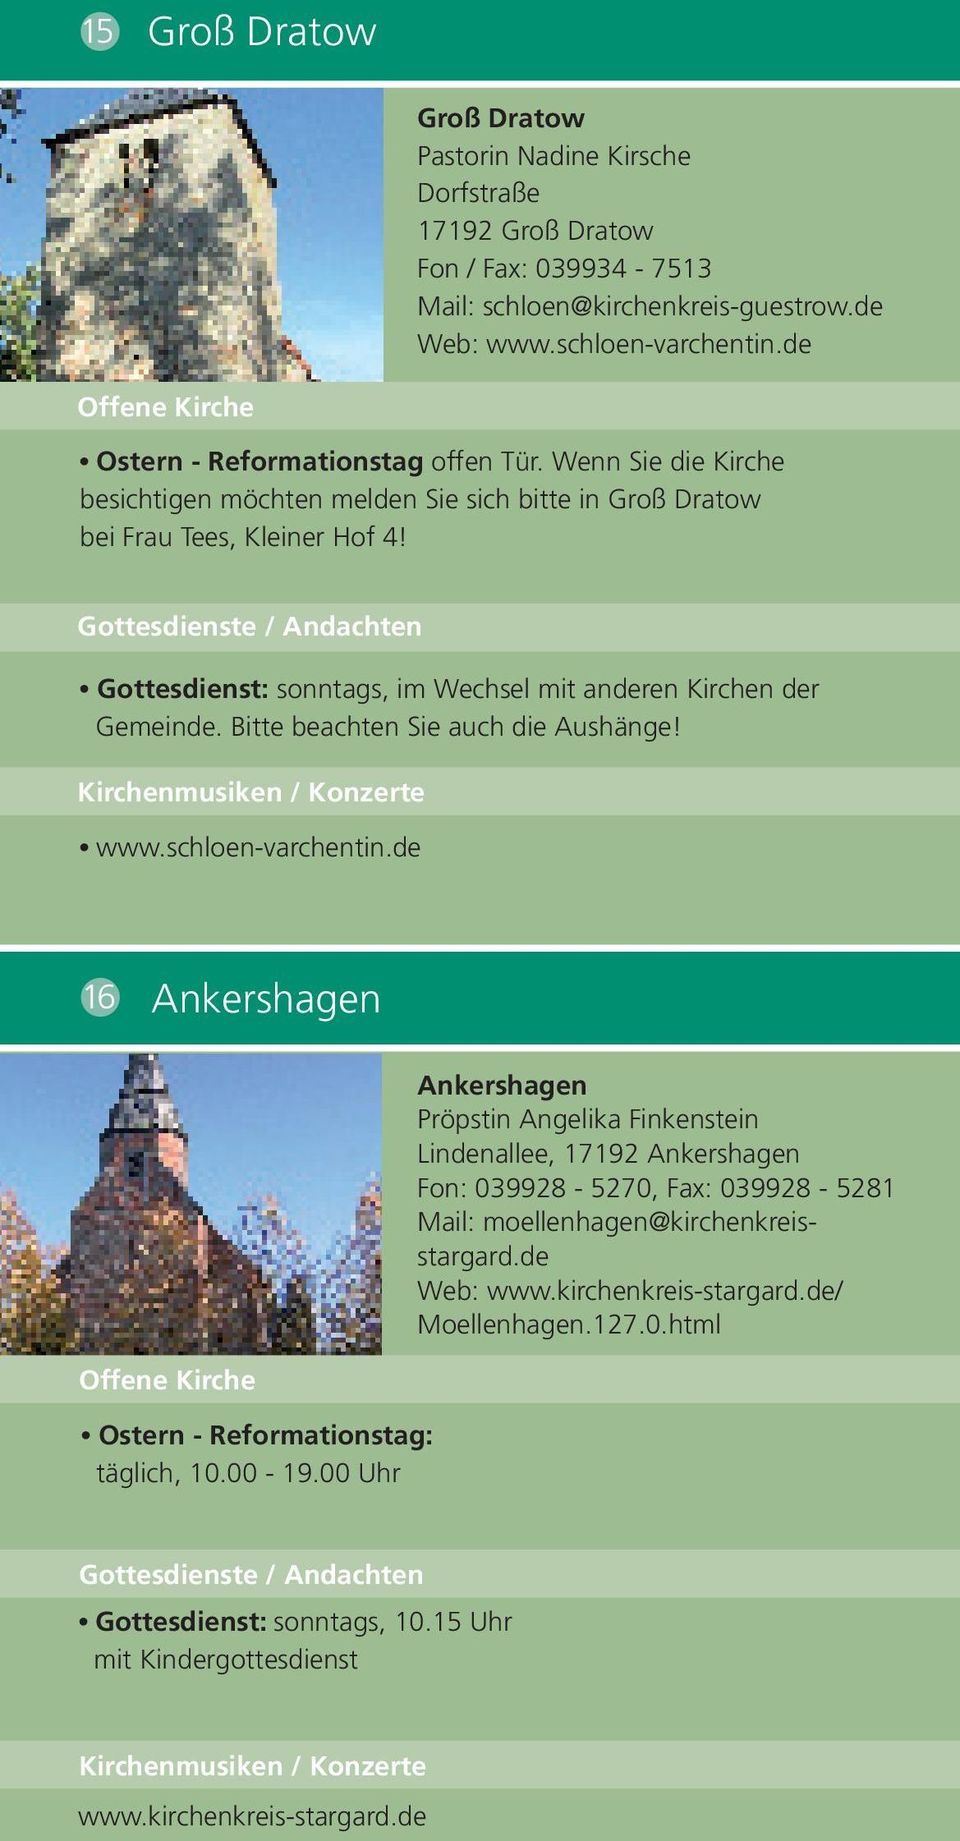 Gottesdienst: sonntags, im Wechsel mit anderen Kirchen der Gemeinde. Bitte beachten Sie auch die Aushänge! www.schloen-varchentin.